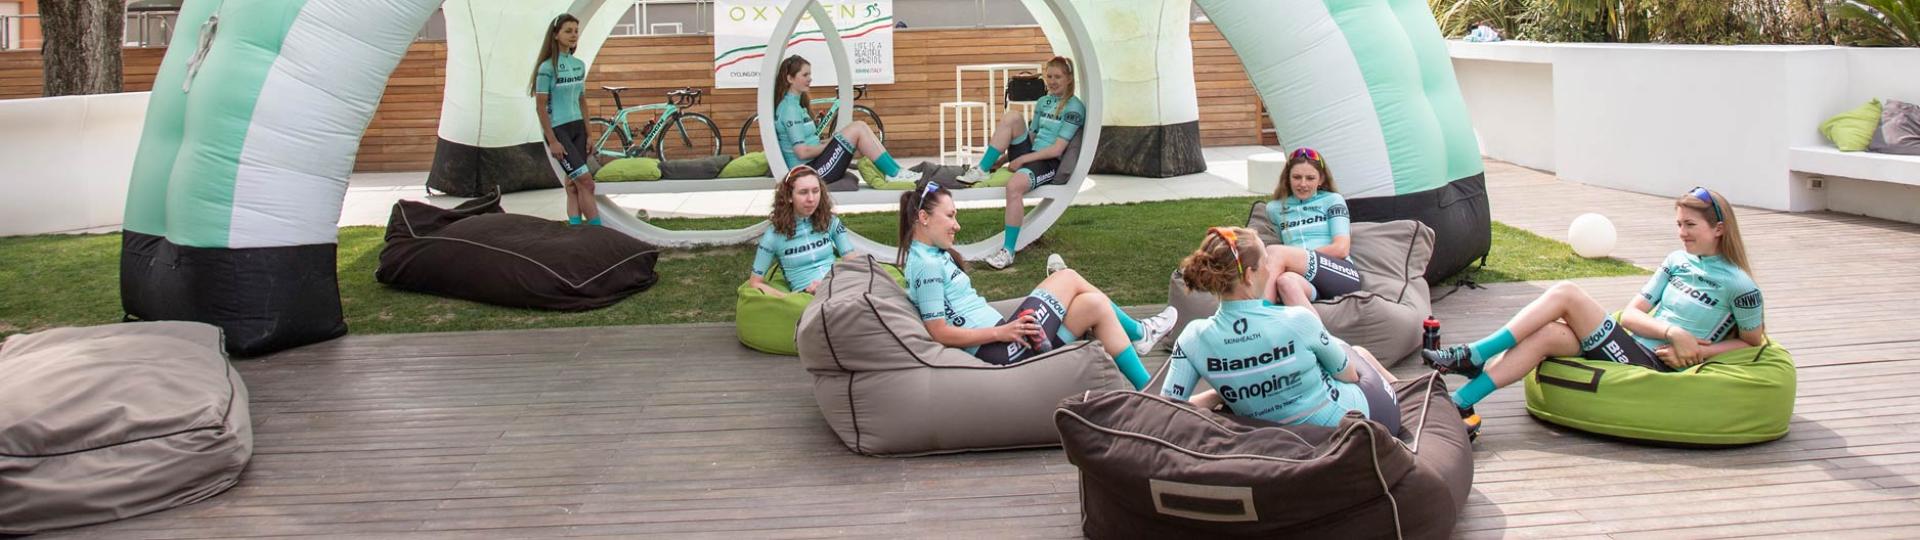 cycling.oxygenhotel it offerte-vacanze-in-bici-rimini 012